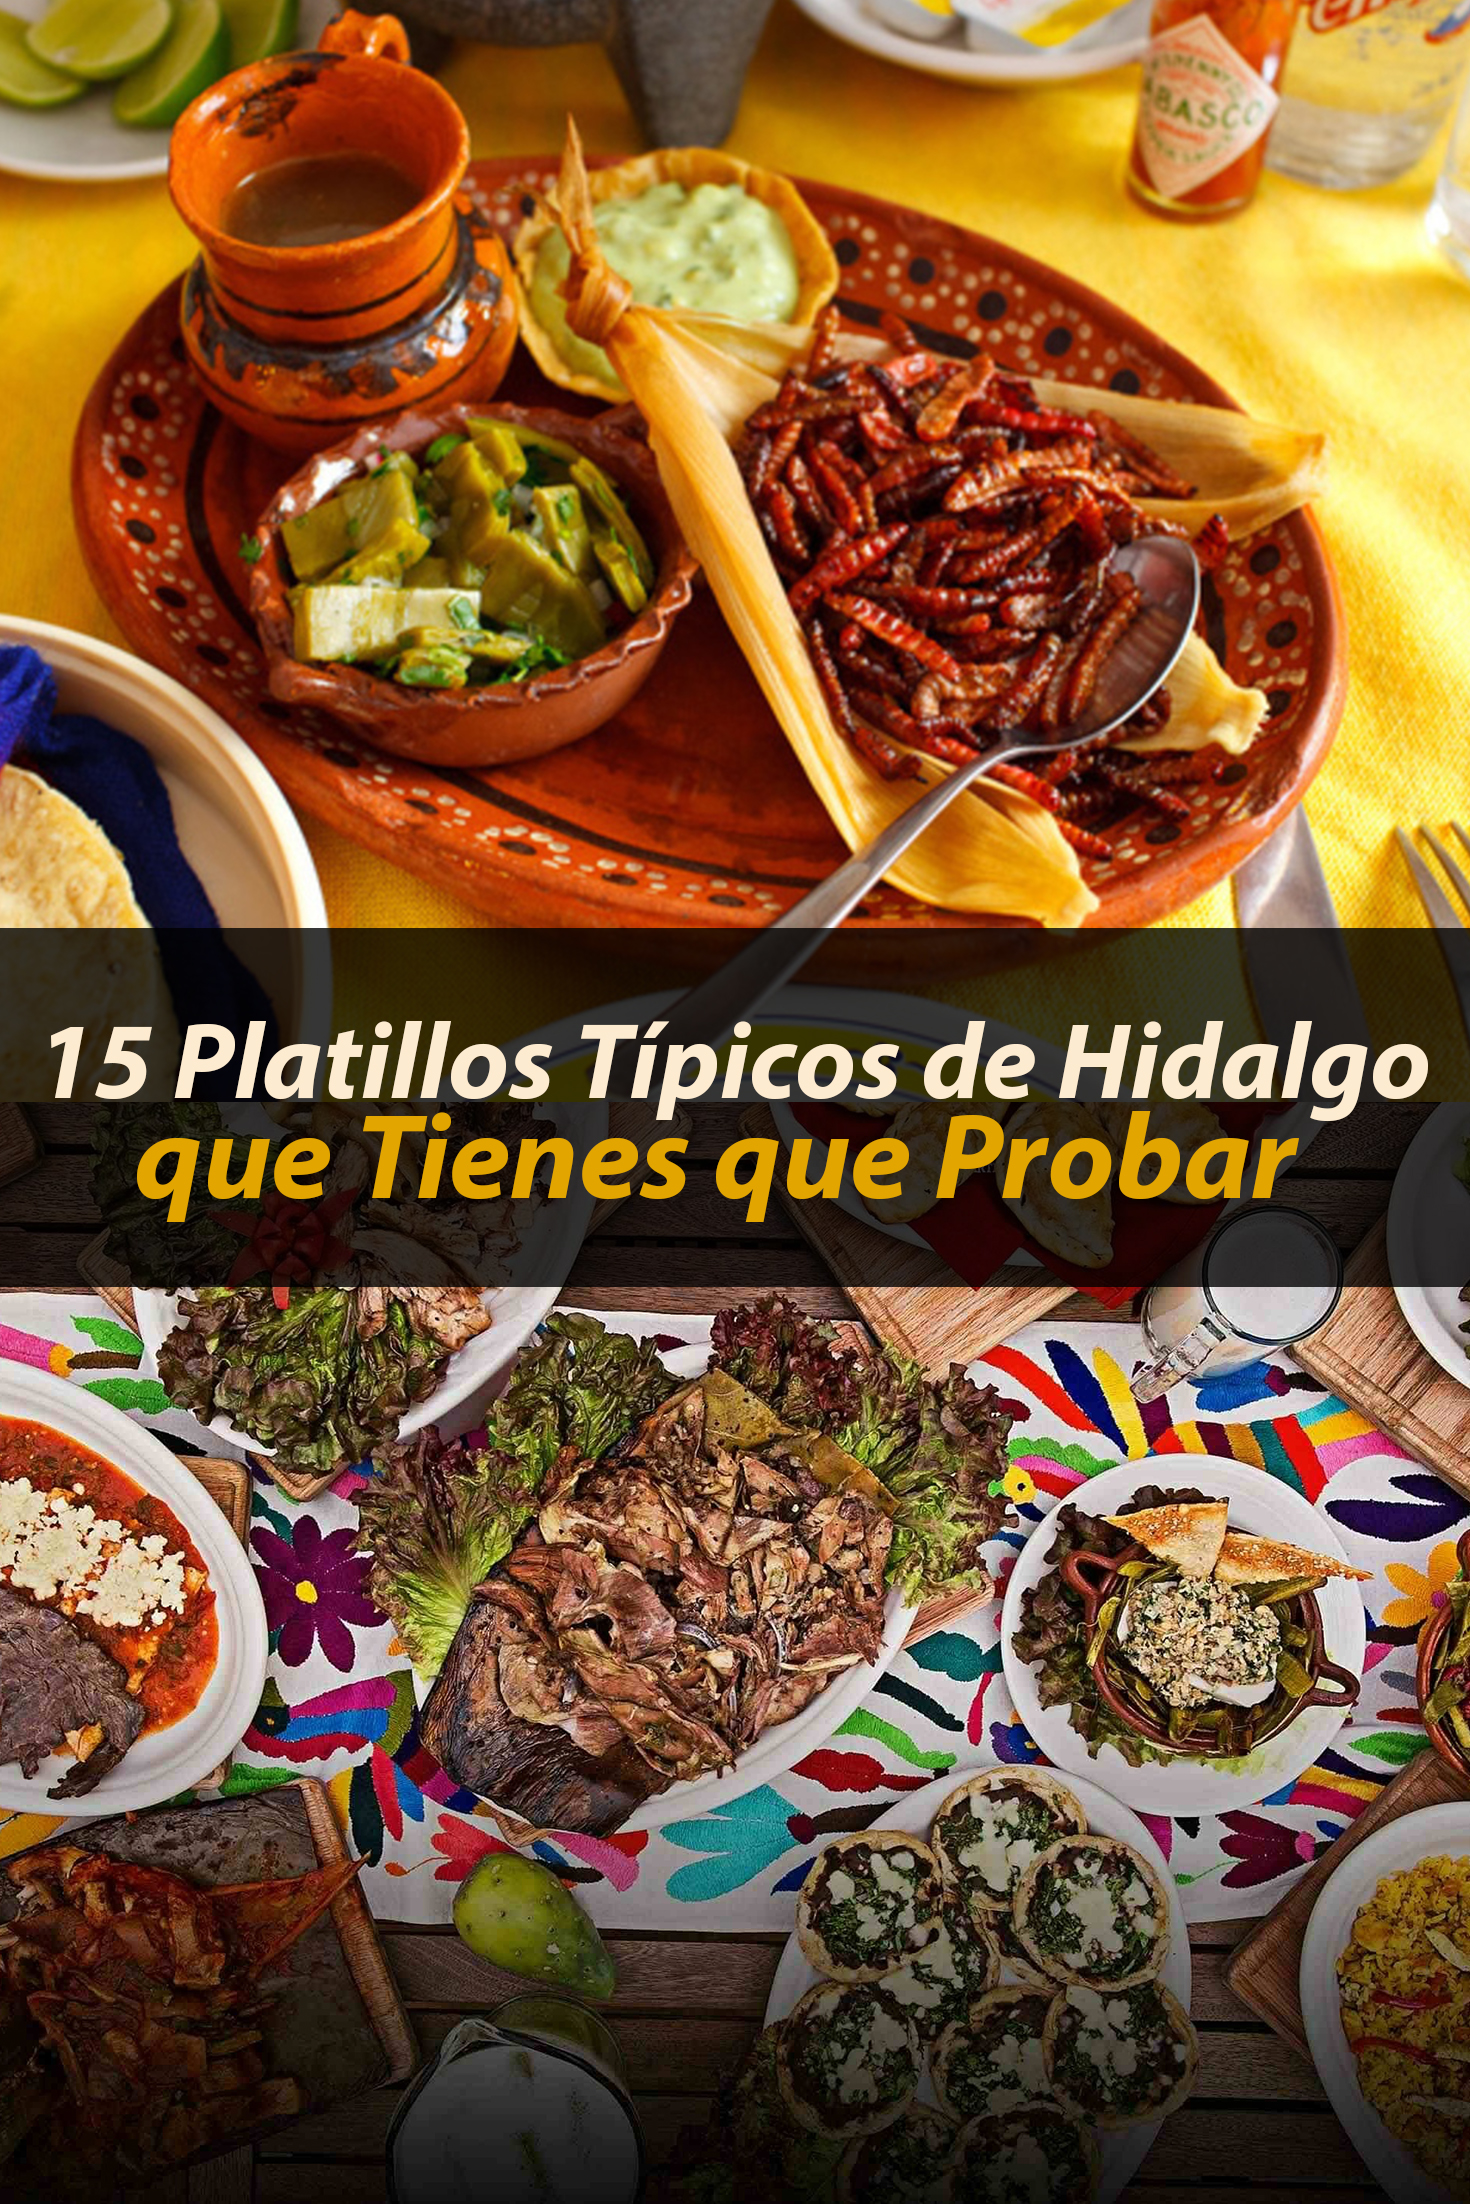 15 platillos típicos de Hidalgo que tienes que probar